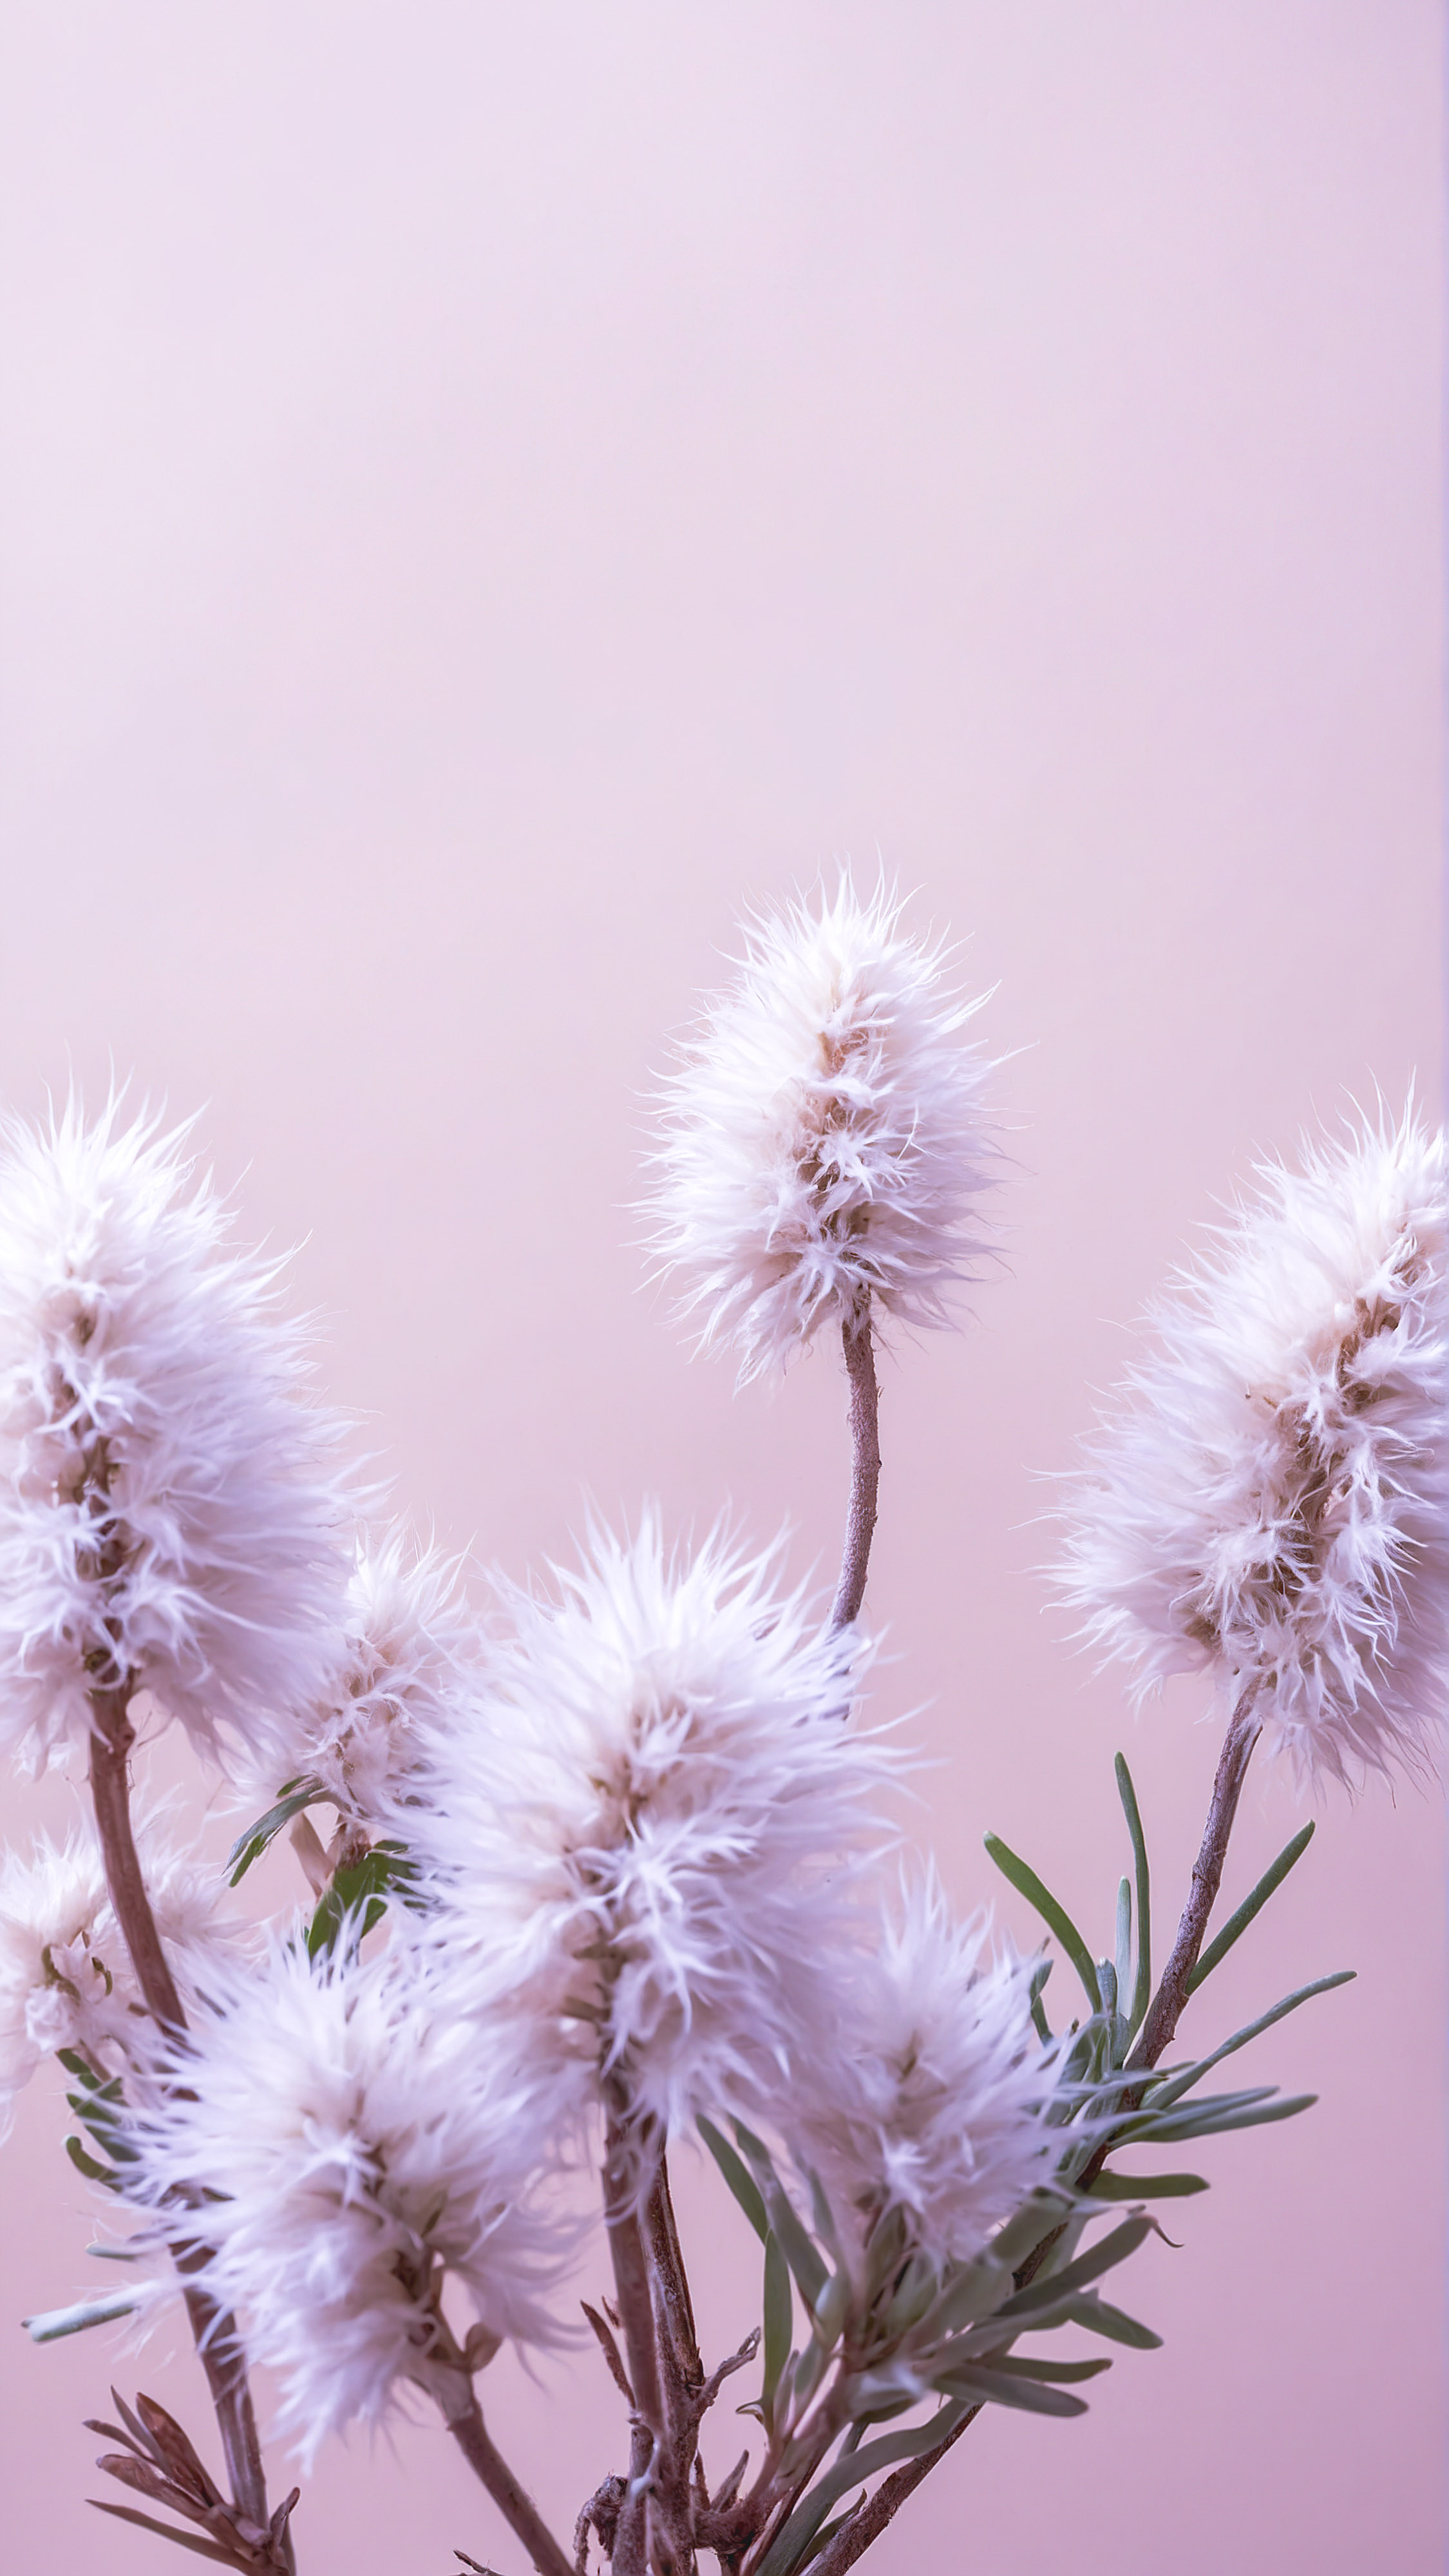 Apportez la beauté de la nature à votre écran avec notre fond d'écran HD mignon pour iPhone, affichant des plantes duveteuses de couleur claire sur un arrière-plan beige doux qui respire la tranquillité.